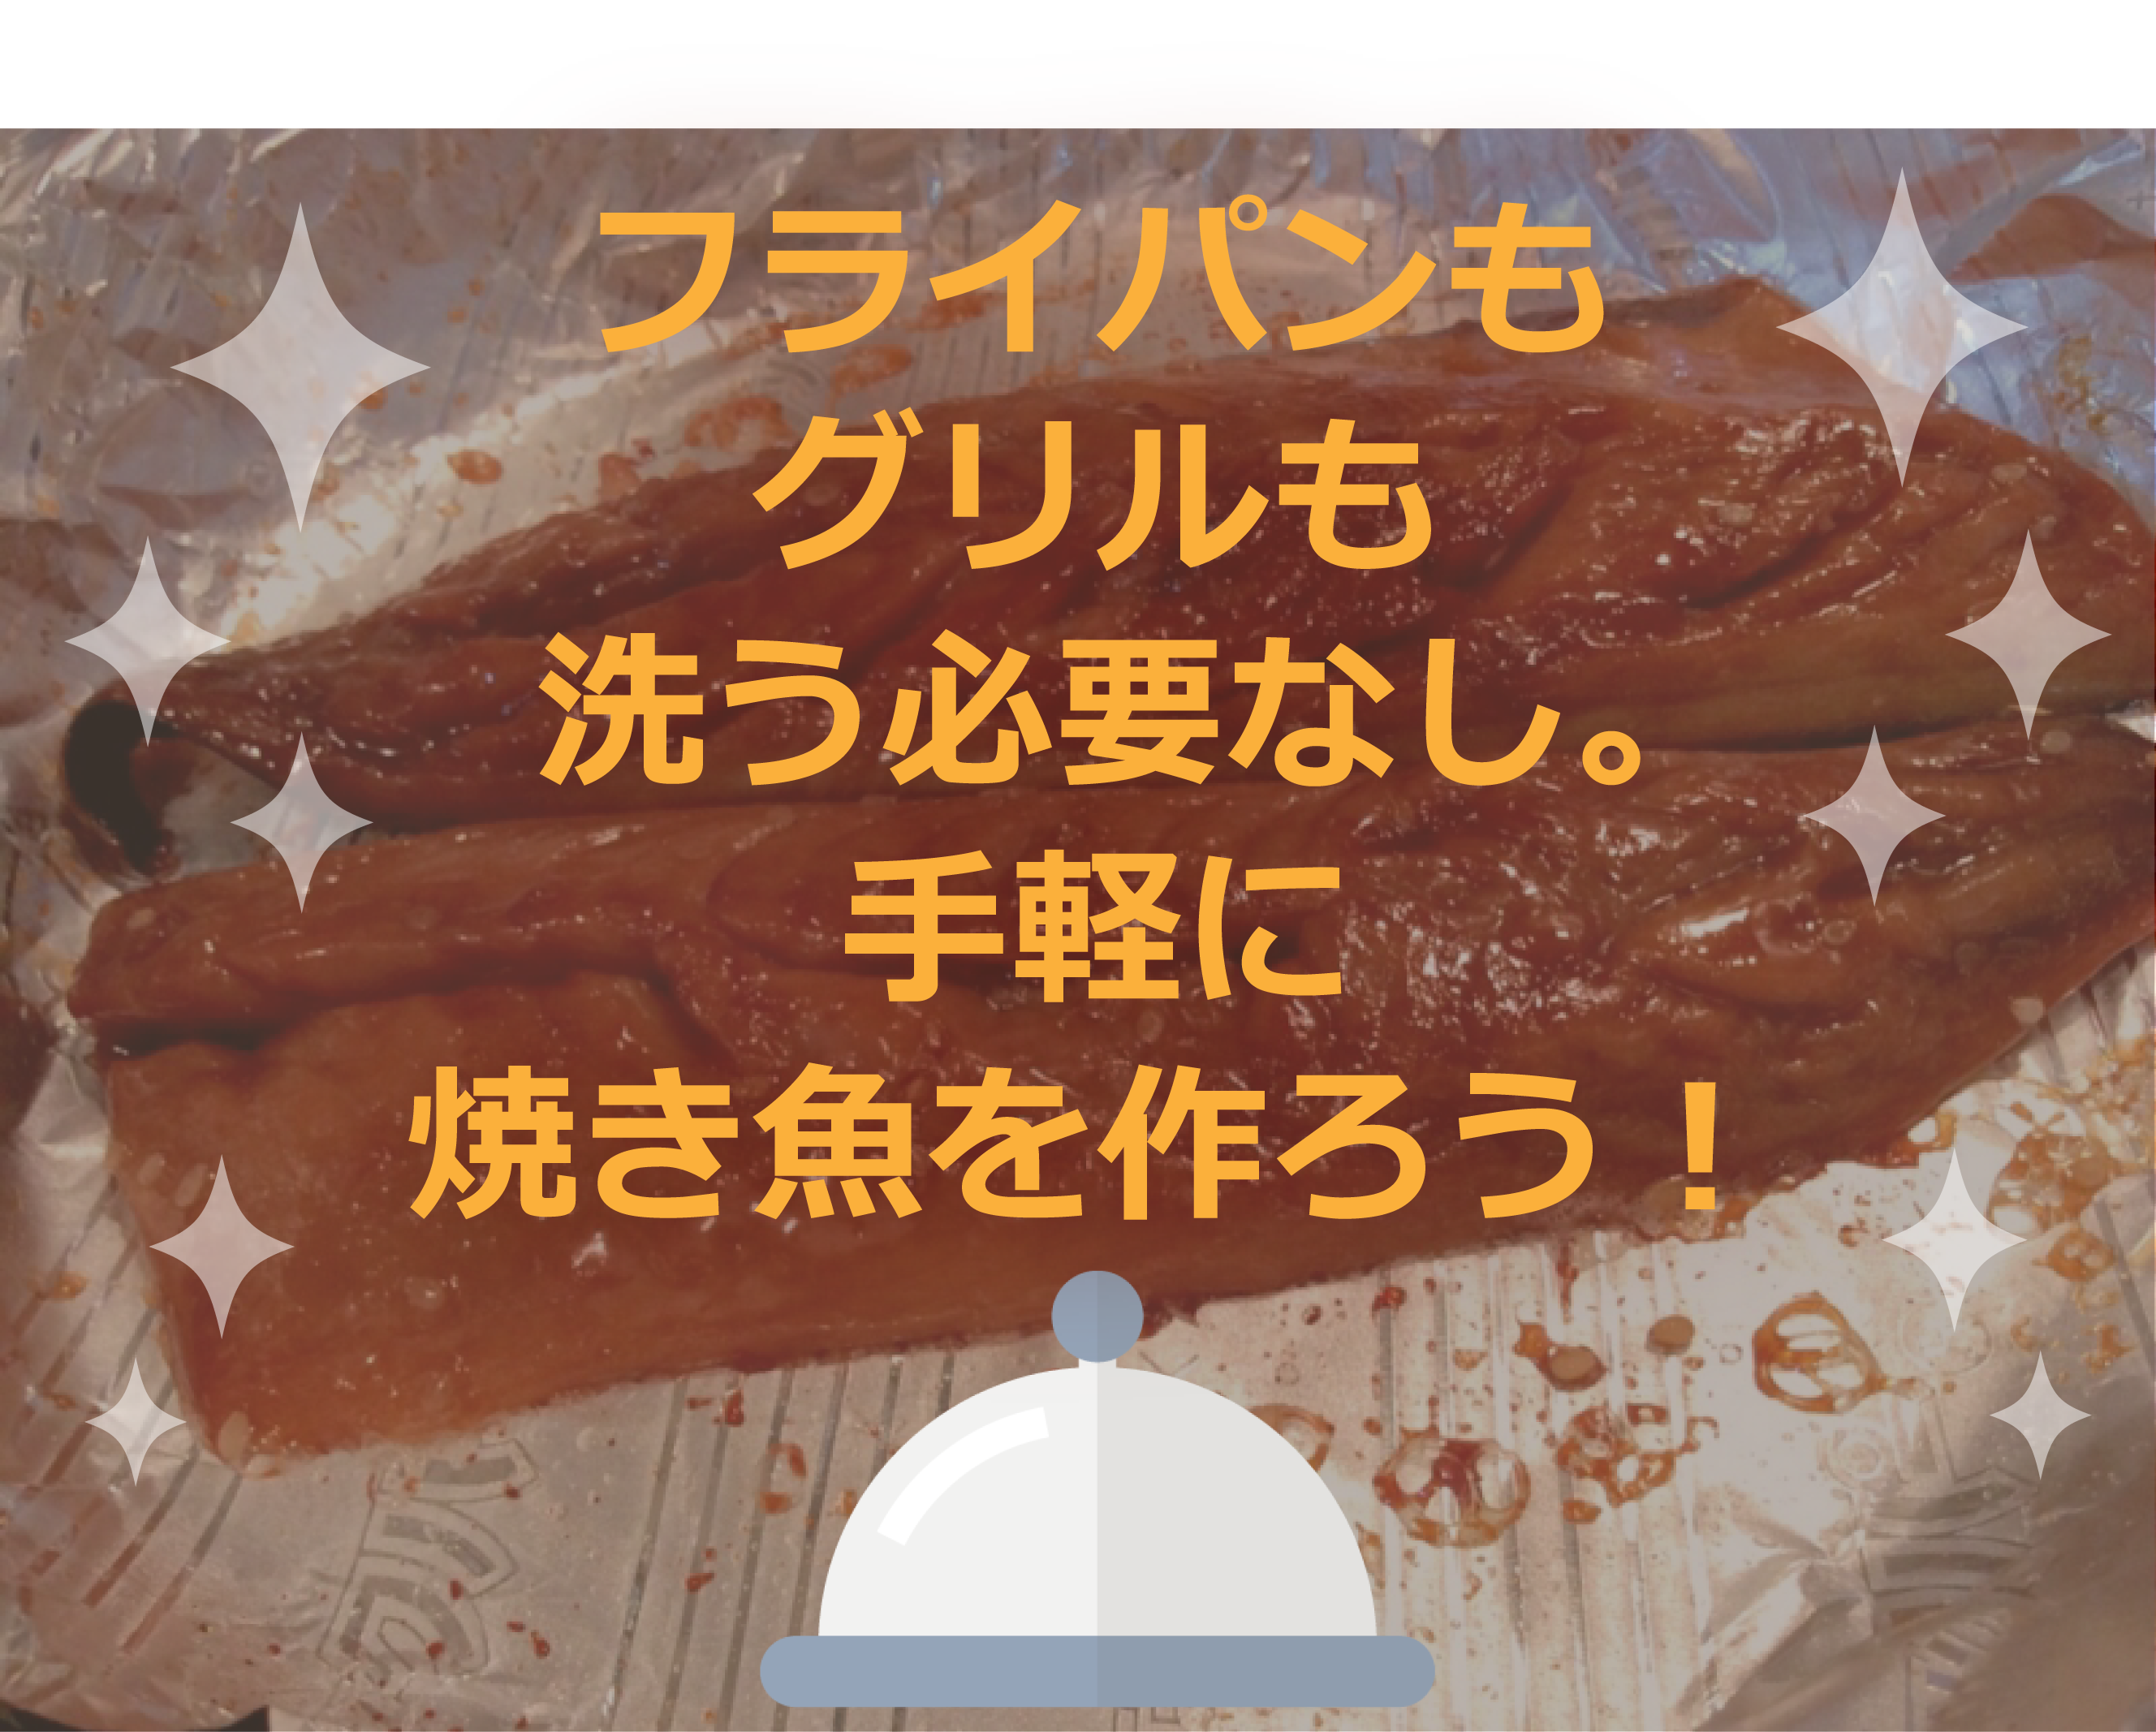 フライパン用魚焼きシートが便利すぎて 焼き魚 が一番よくやるメニューになった From Fukuoka